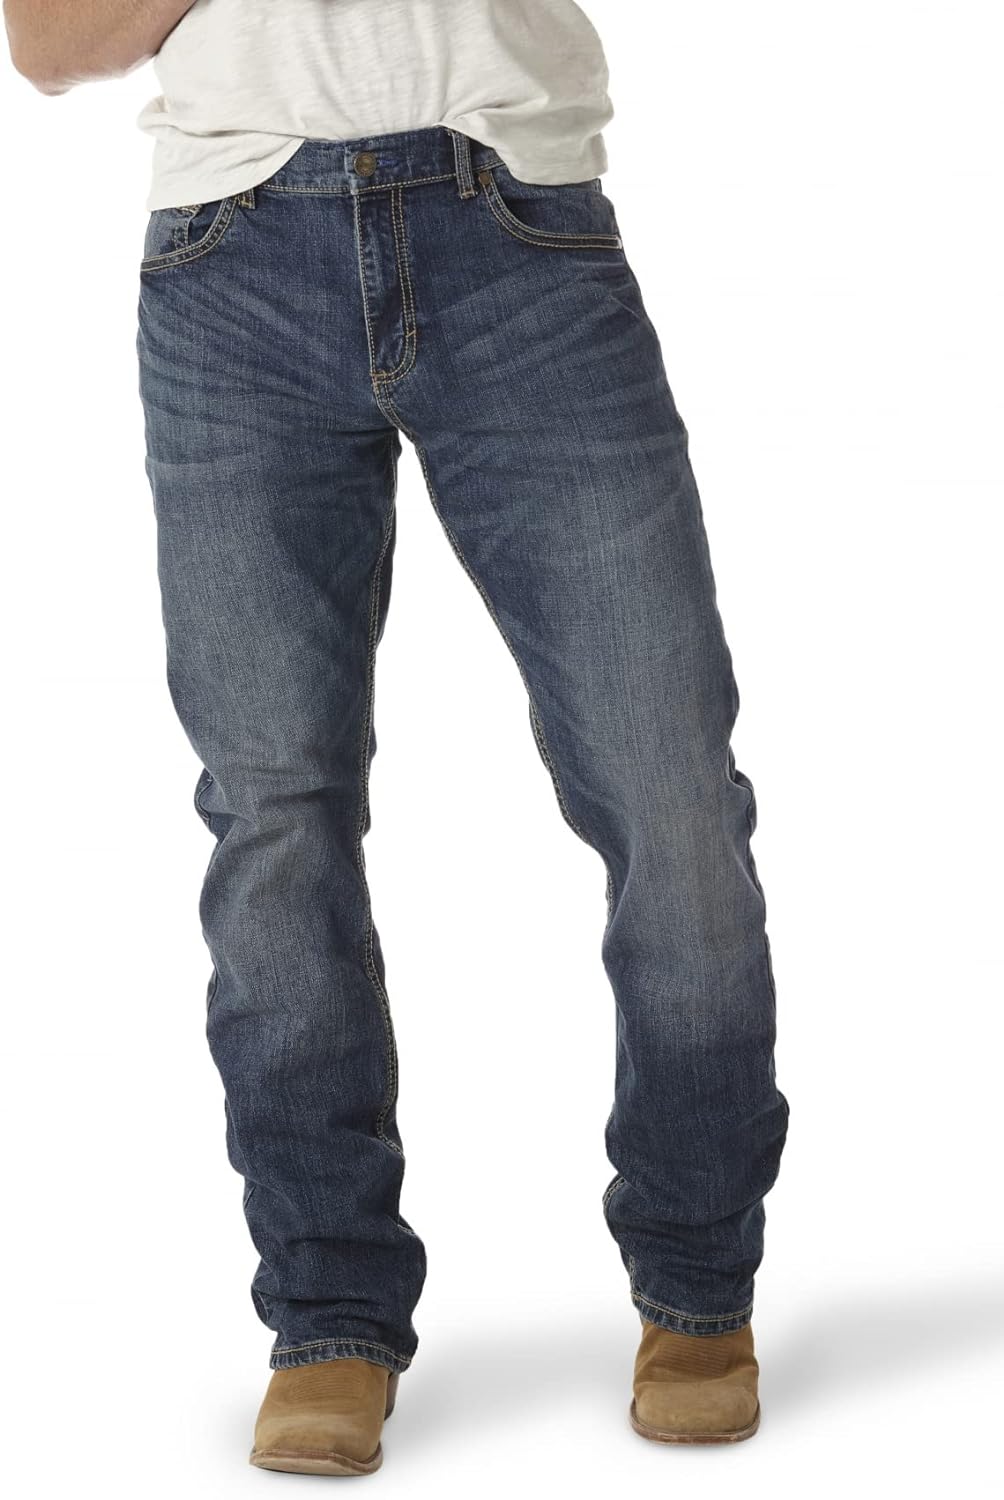 Wrangler - Slim Straight Jeans